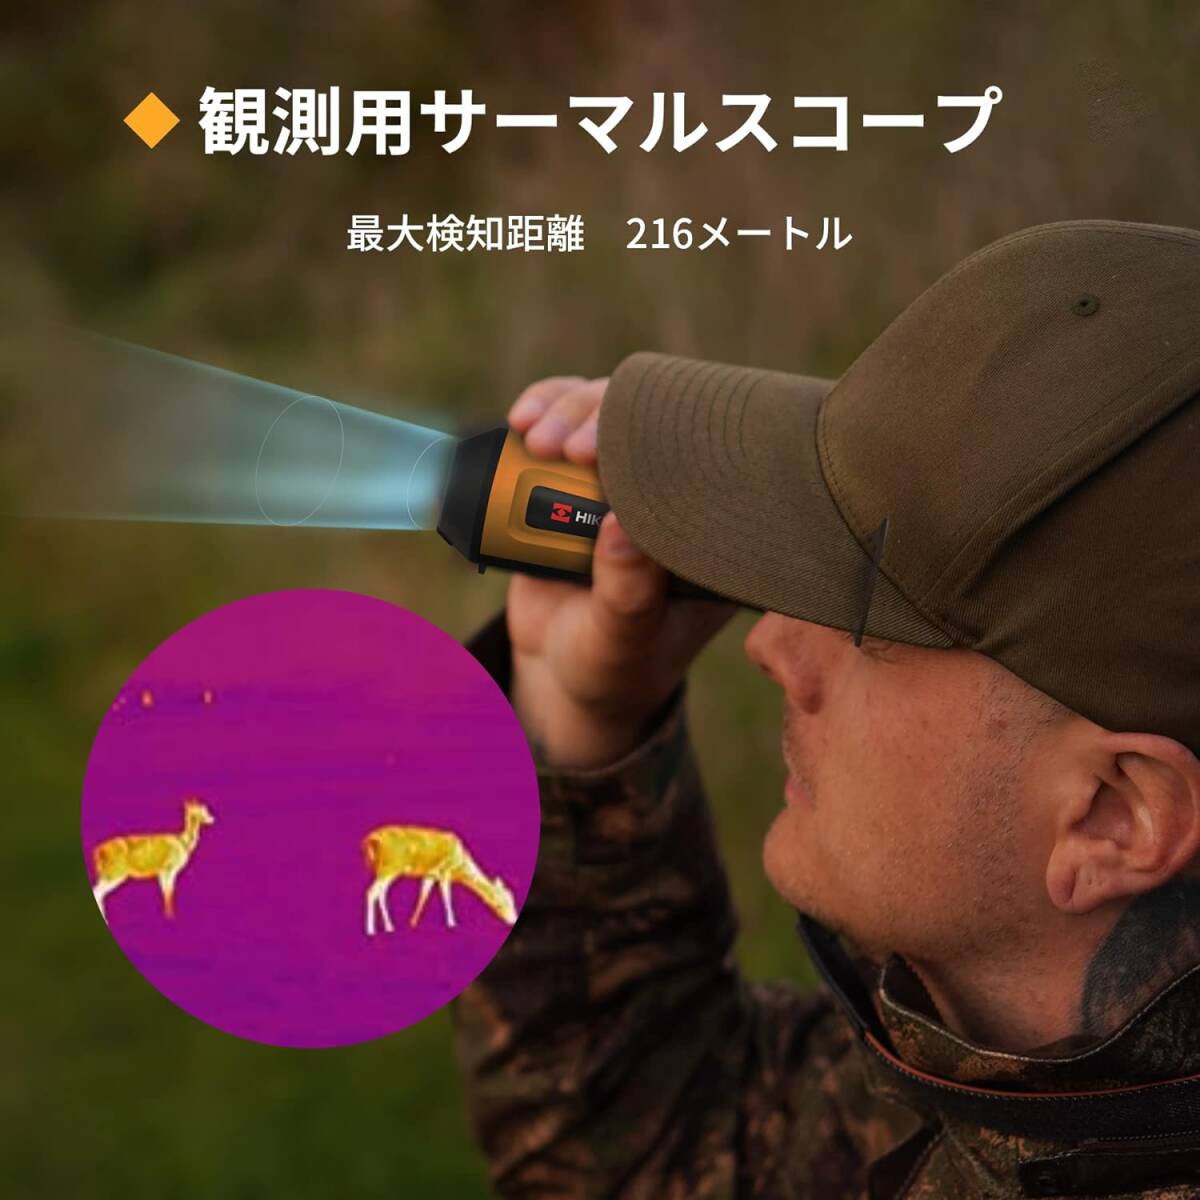 赤外線サーマル単眼鏡 サーマル暗視スコープ 小型軽量 ビデオ録画 動物観察 狩猟 夜間調査 救助 警備 サバゲー ポリカーボネート 8GBメモリ